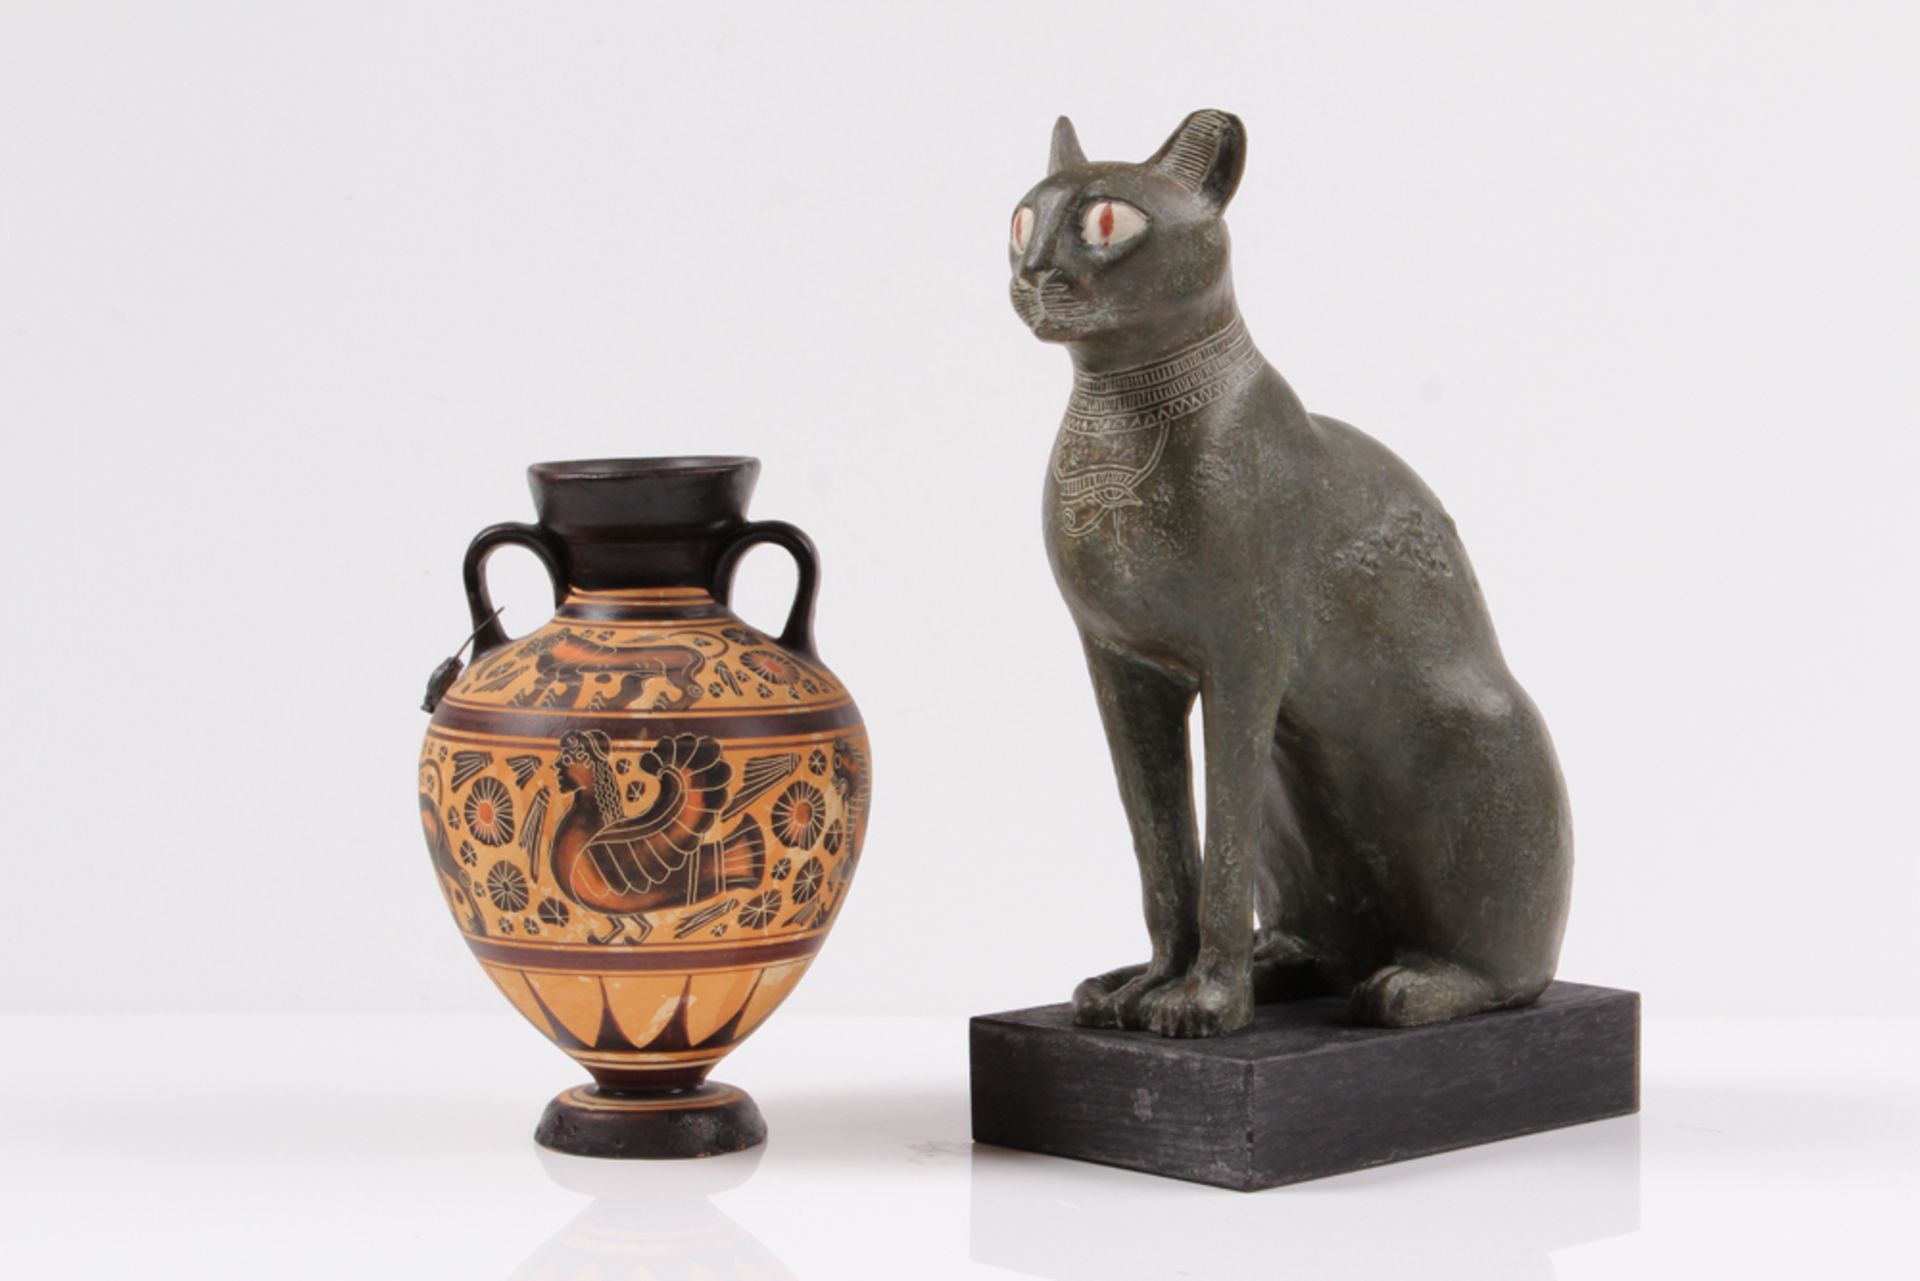 Ägyptische Katze. Kopie der Gottheit Bastet. H: 23,5 cm. Dazu Kopie einer griechischen Ampho